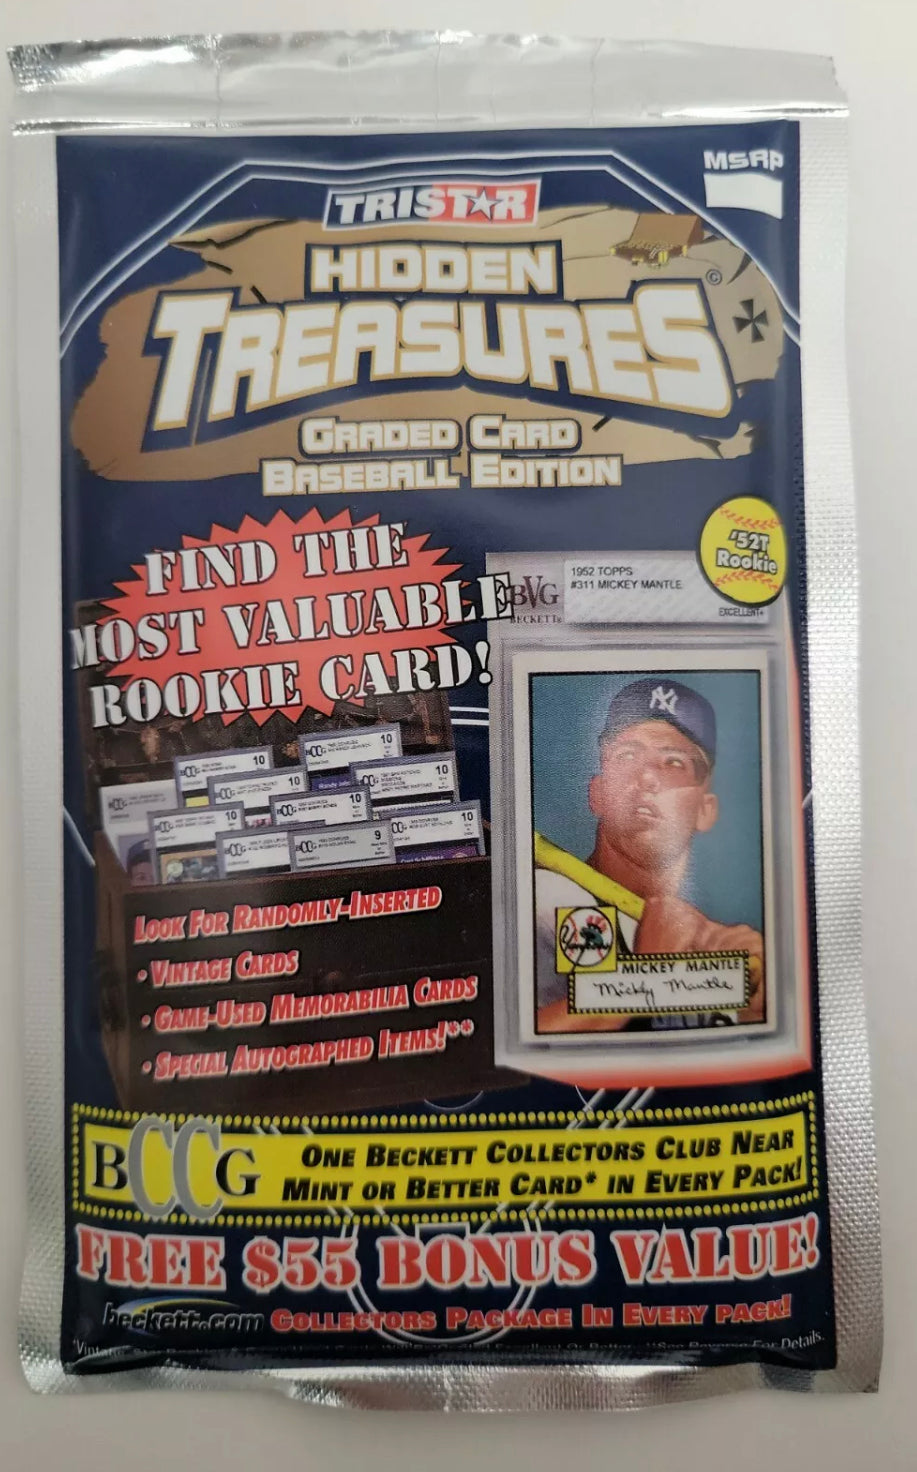 1 pack 2006 TriStar Hidden Treasures Graded Card Baseball Edition